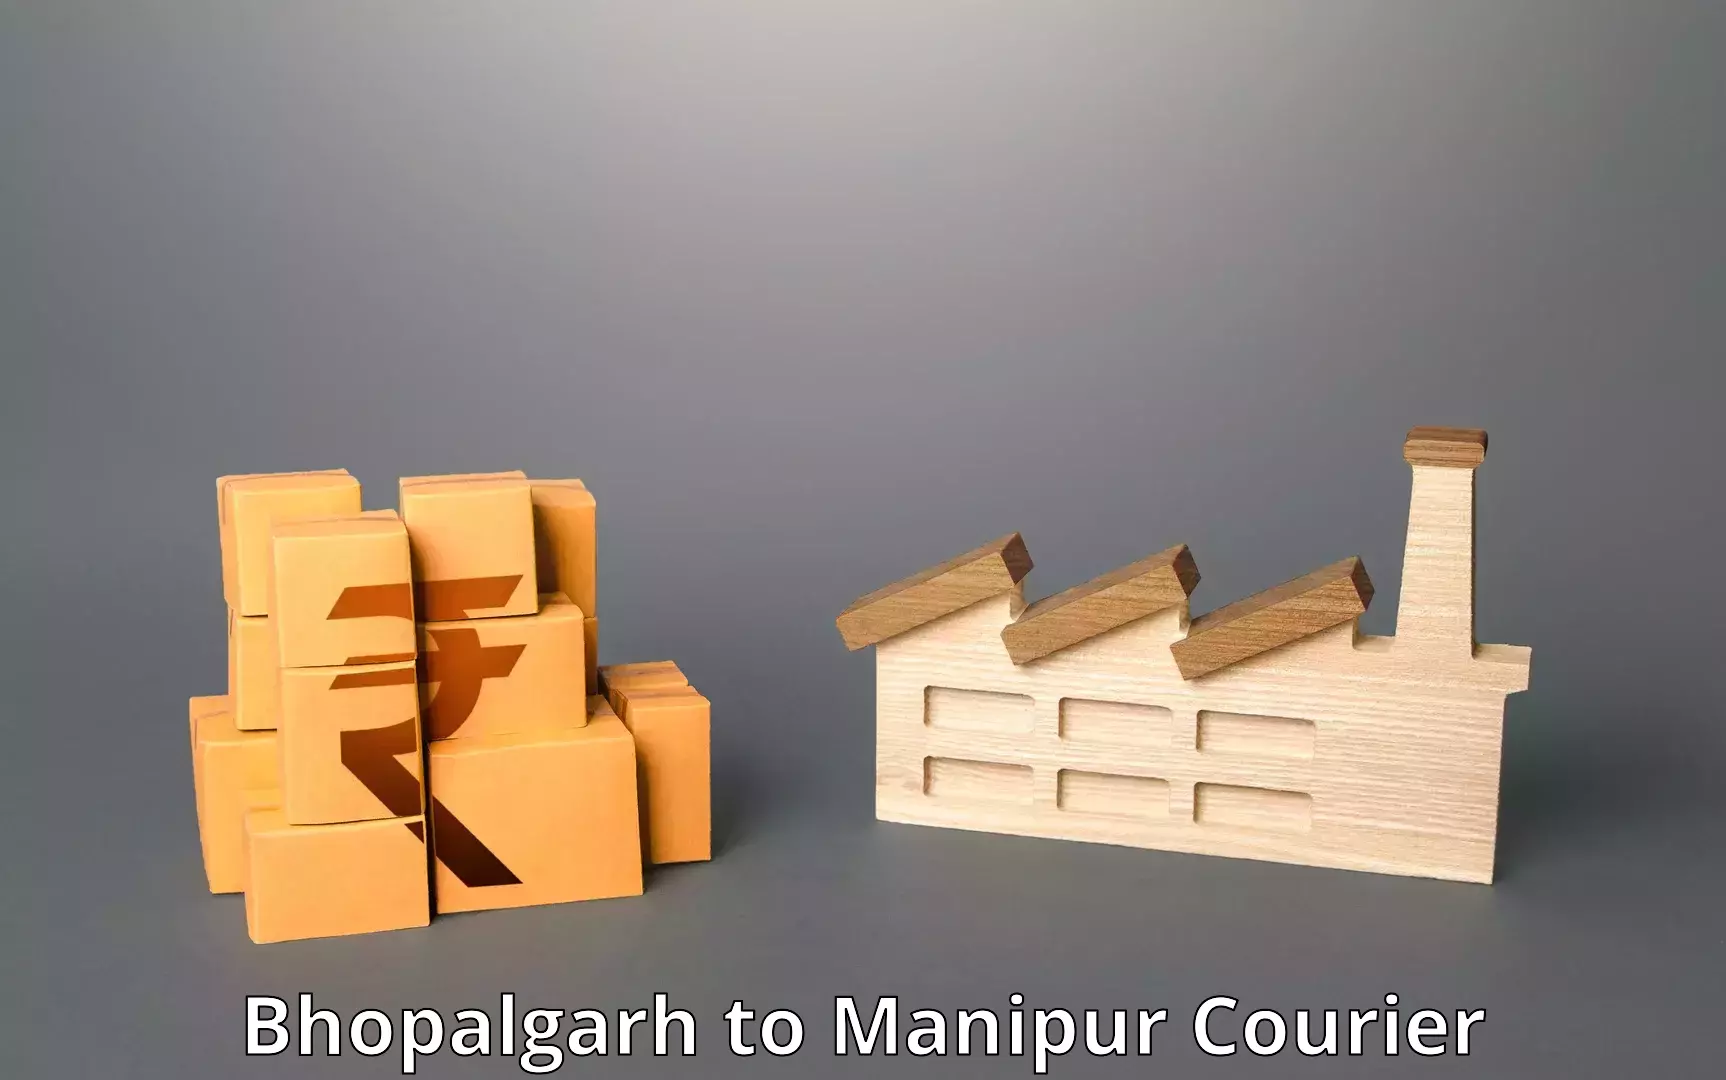 Doorstep delivery service Bhopalgarh to Senapati